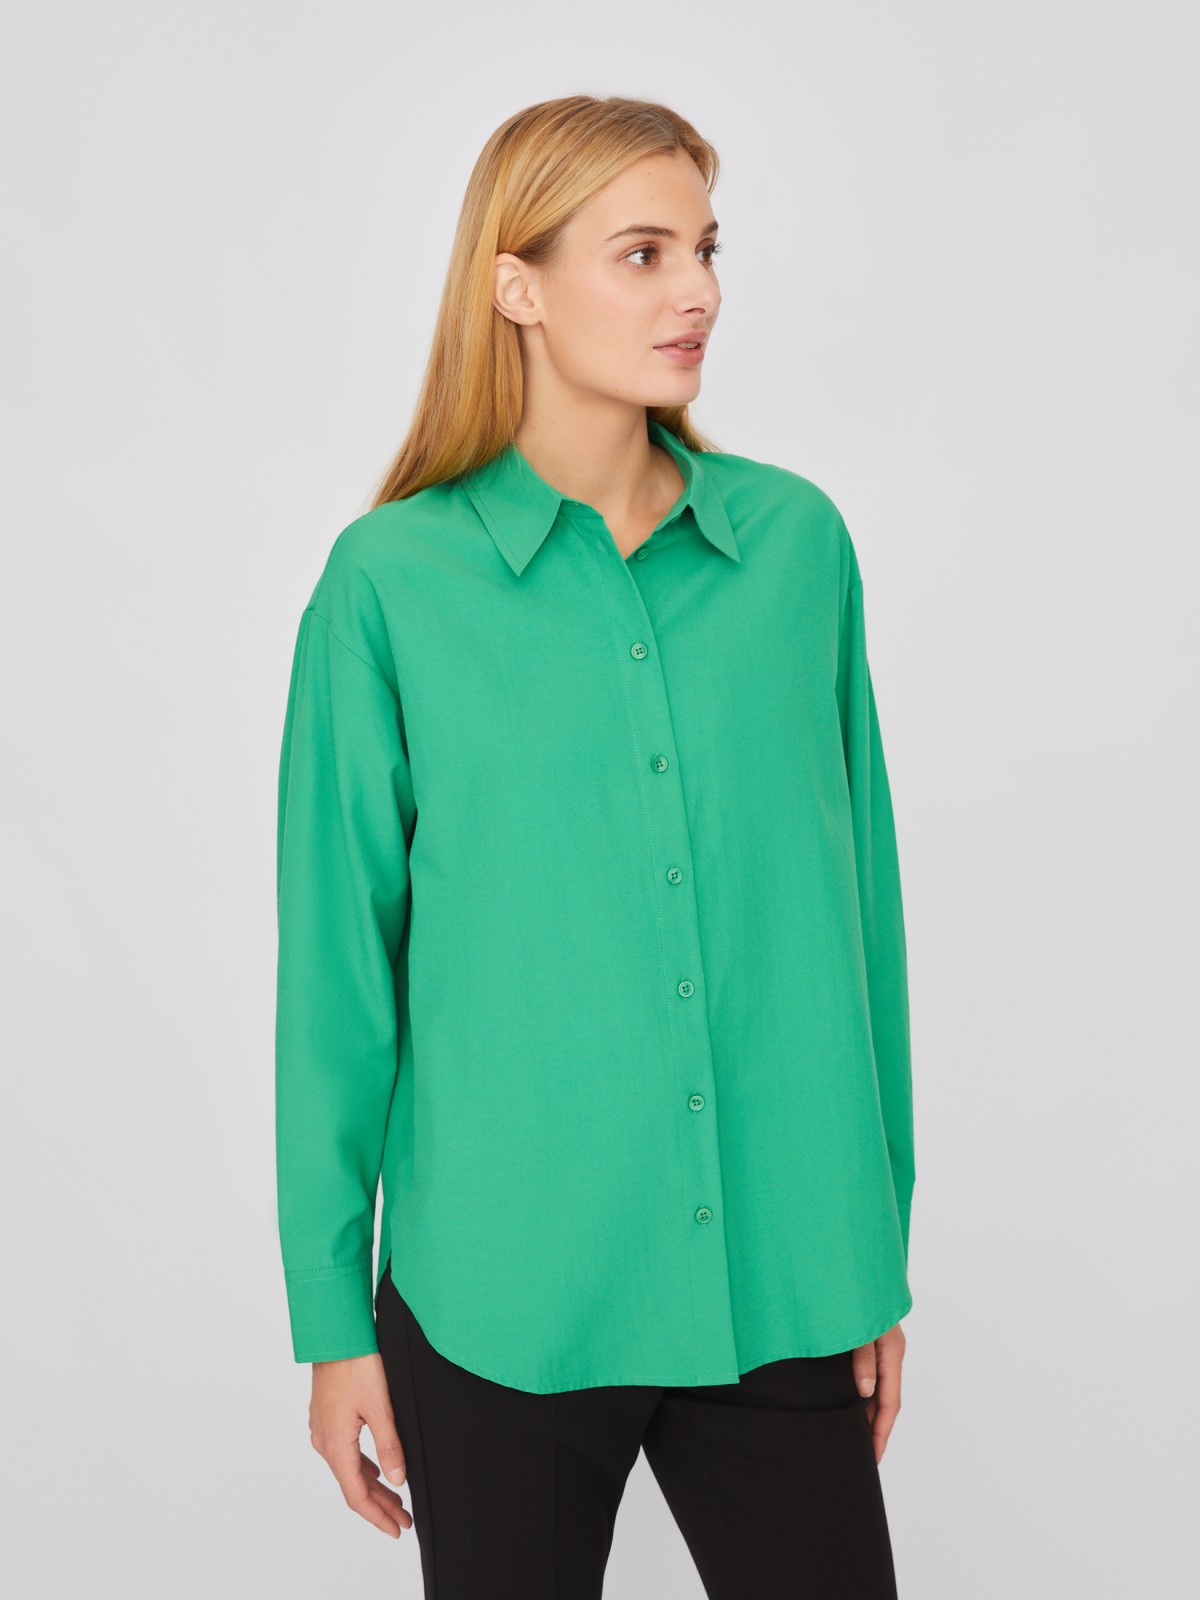 Рубашка свободного силуэта с длинным рукавом zolla 02411117Y553, цвет зеленый, размер XS - фото 5